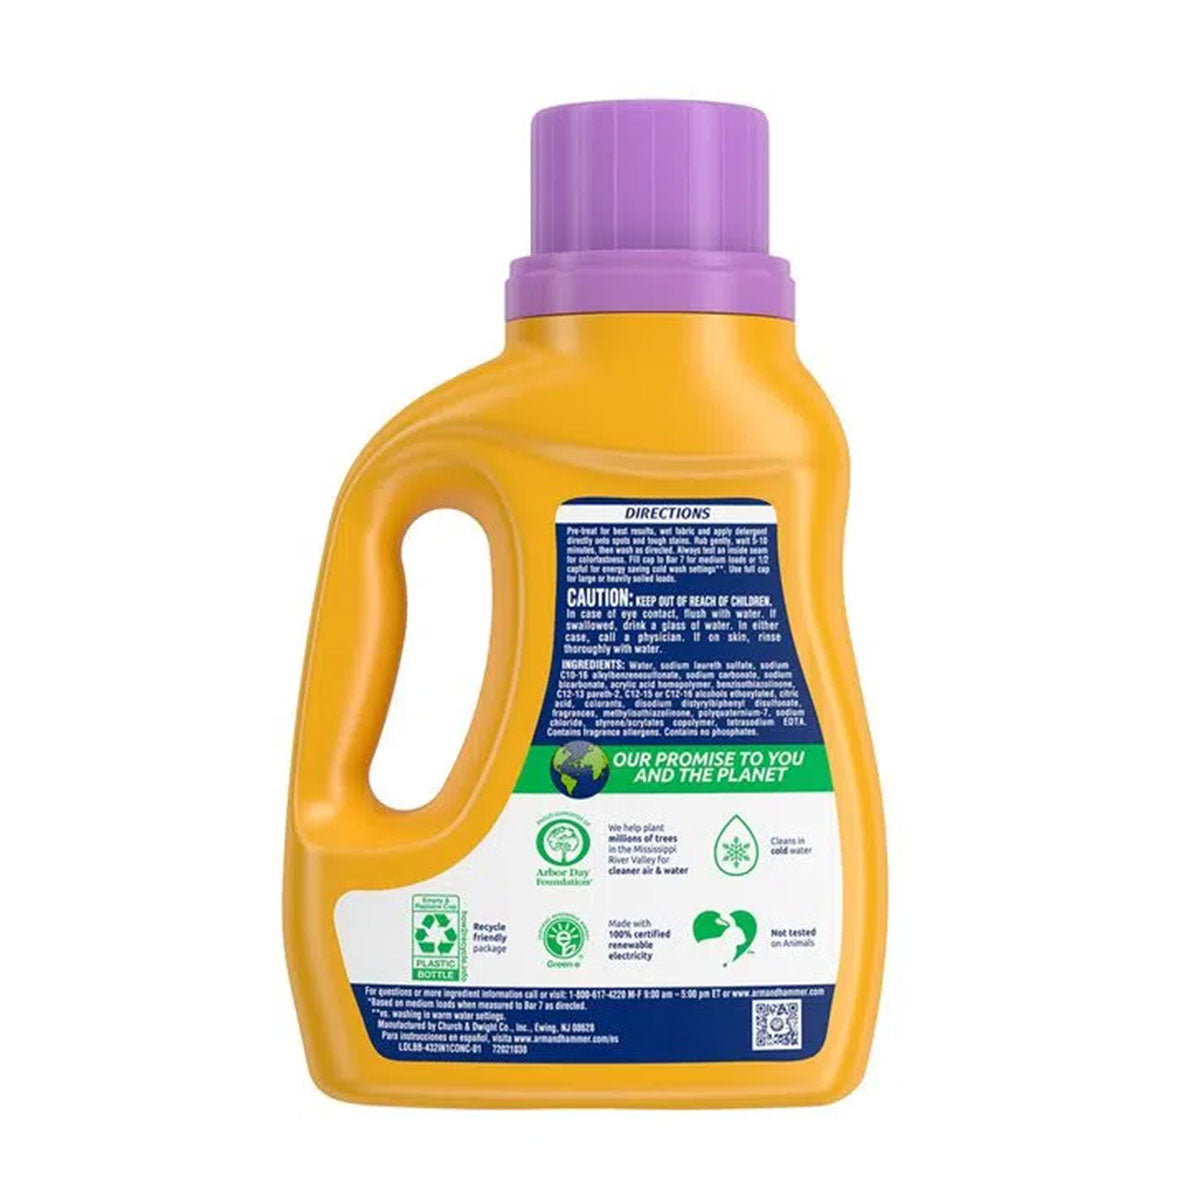 Detergente líquido con un toque de Suavizante para ropa 3 en 1 Arm & Hammer, Alta Eficiencia 2,97 litros (77 cargas)